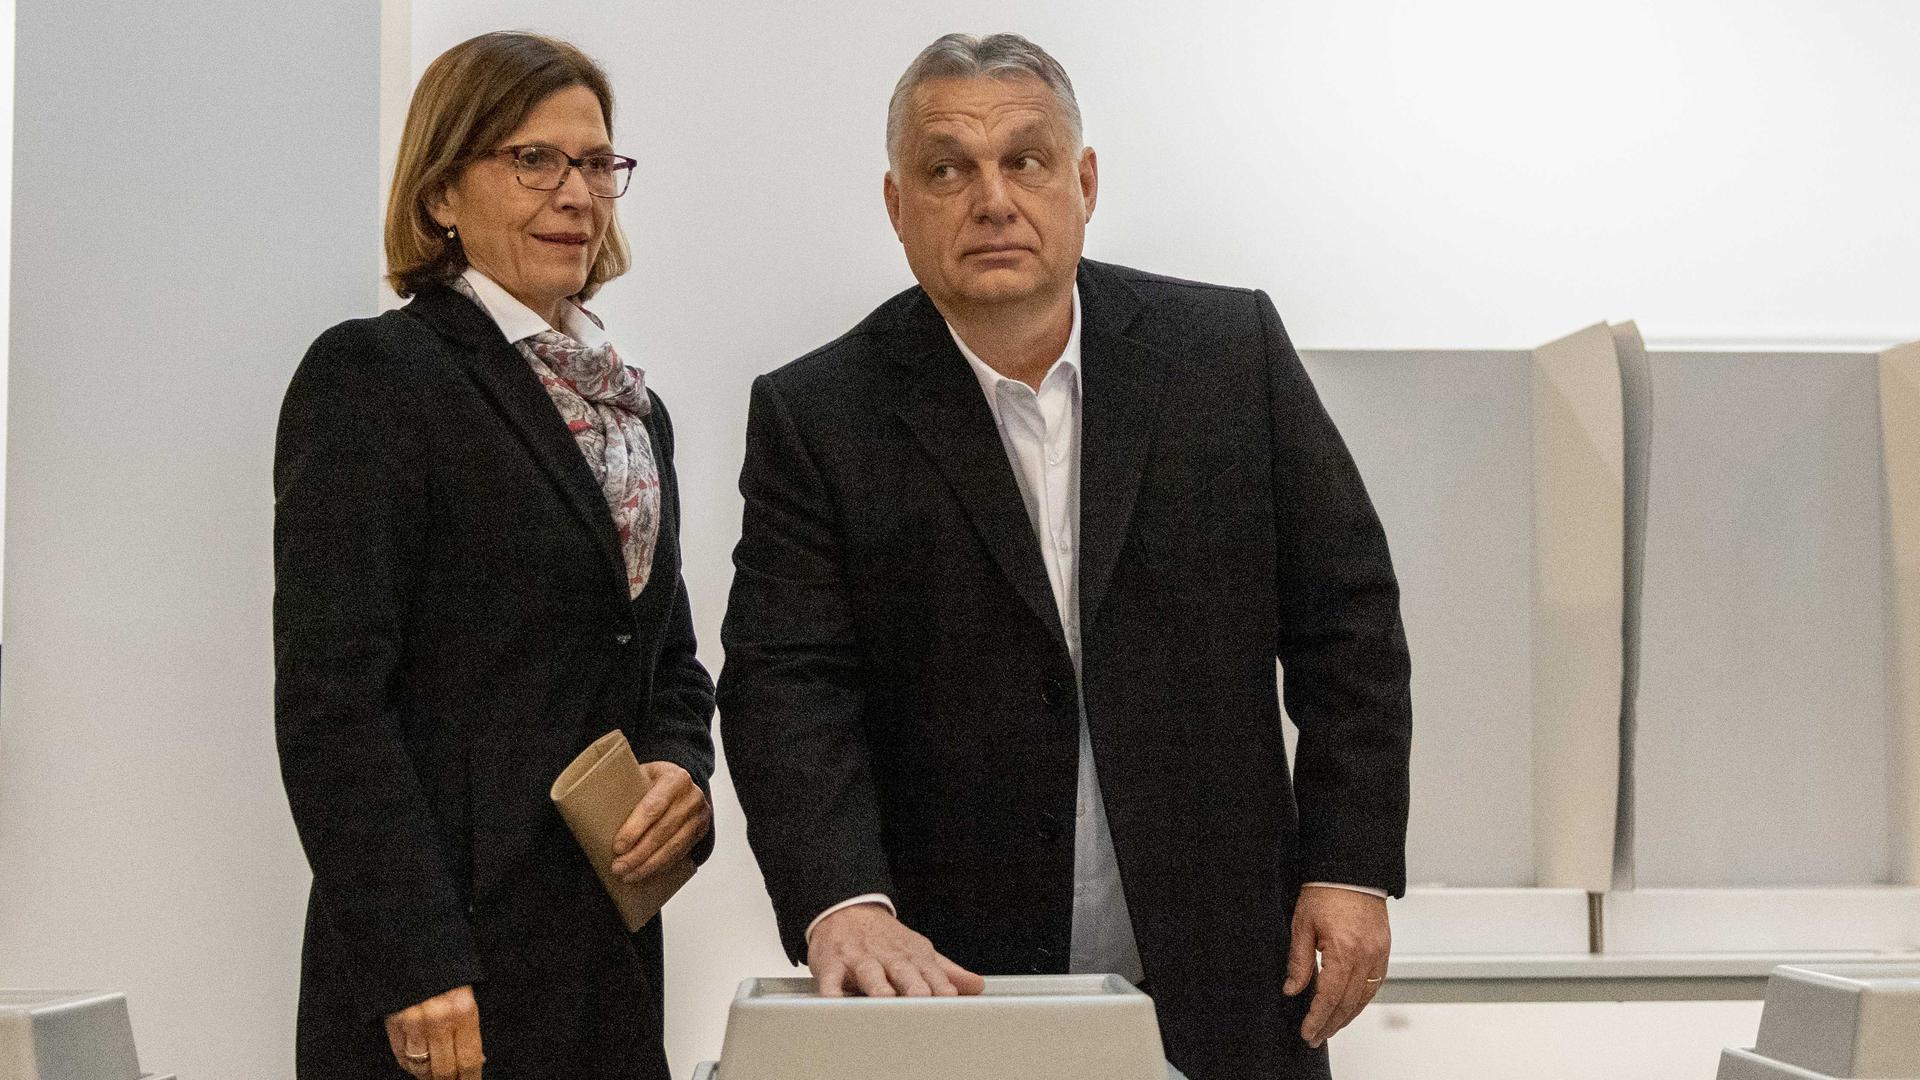 Viktor Orban und seine Frau geben ihre Stimme für die Wahl ab.